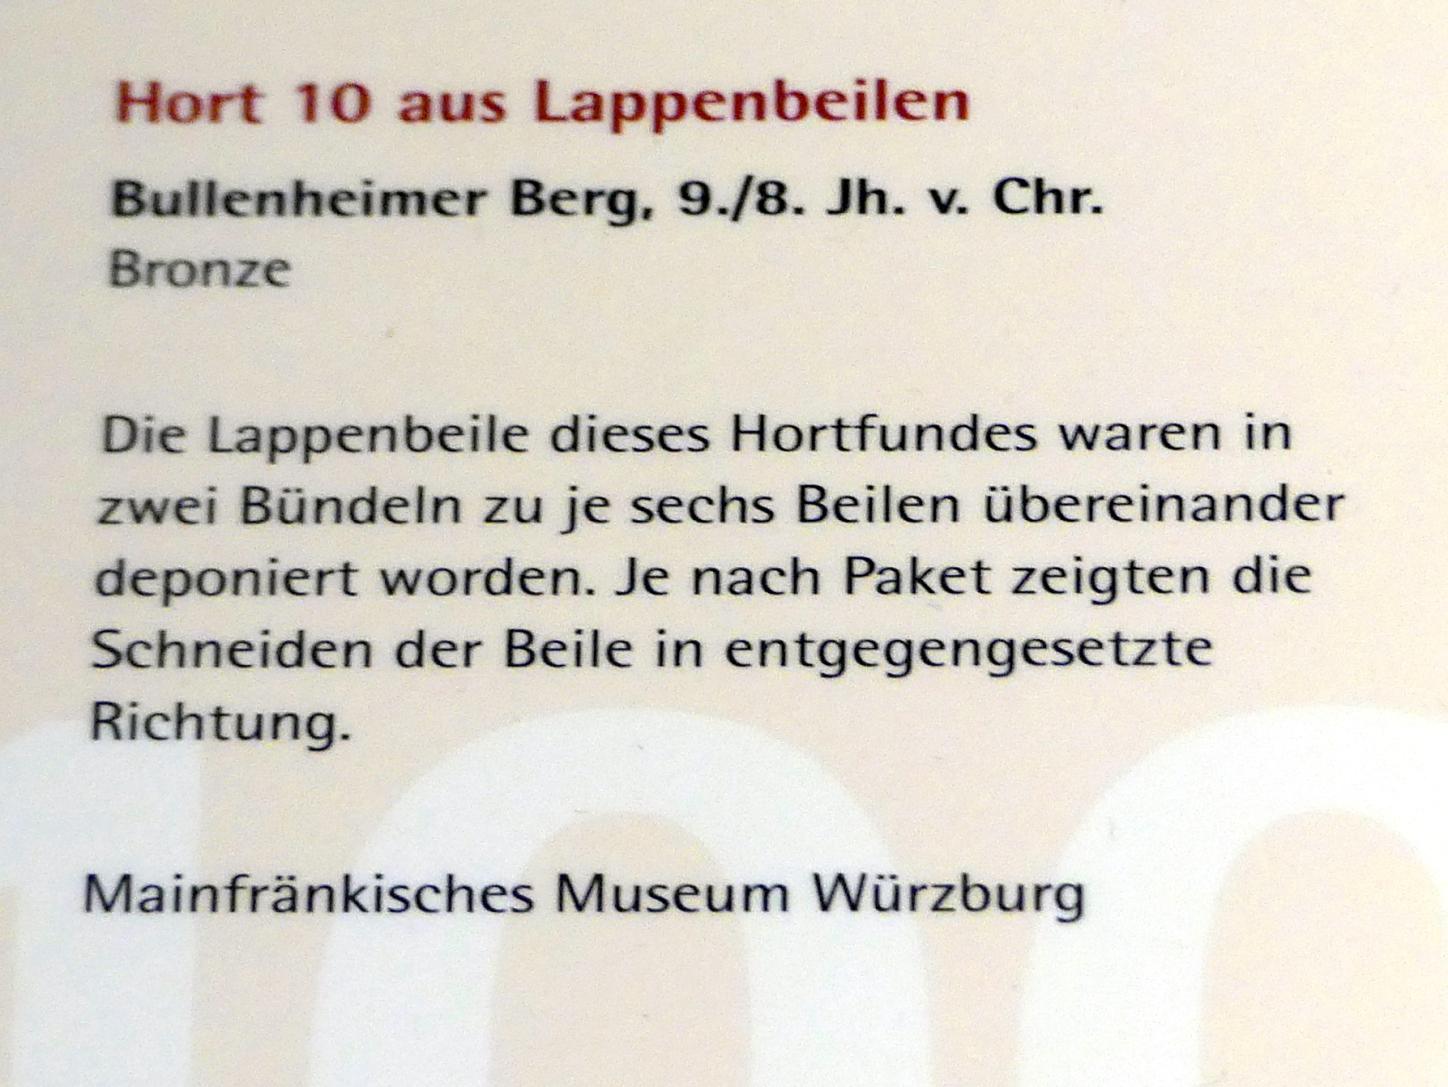 Hort aus Lappenbeilen, Urnenfelderzeit, 1400 - 700 v. Chr., 900 - 700 v. Chr., Bild 2/2